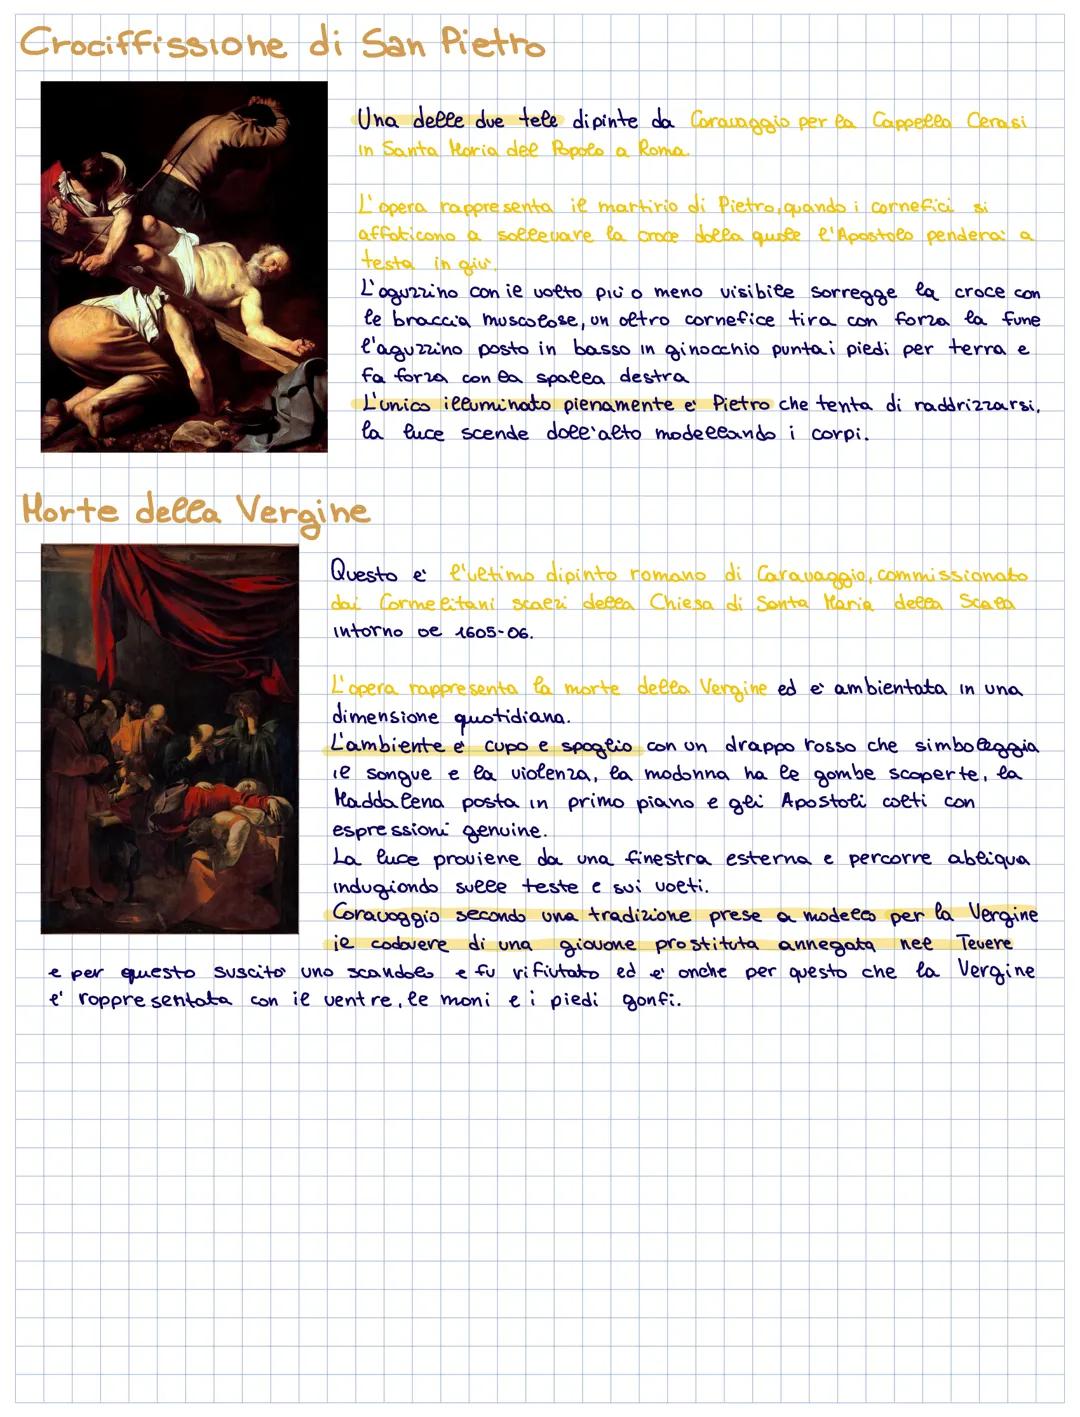 پر ہمت
a
m
Hichelangelo Merisi chiamato Caravaggio nasce a Milano nel 1571 da una famiglia originaria
oppunto di Caravaggio.
Prima formazion